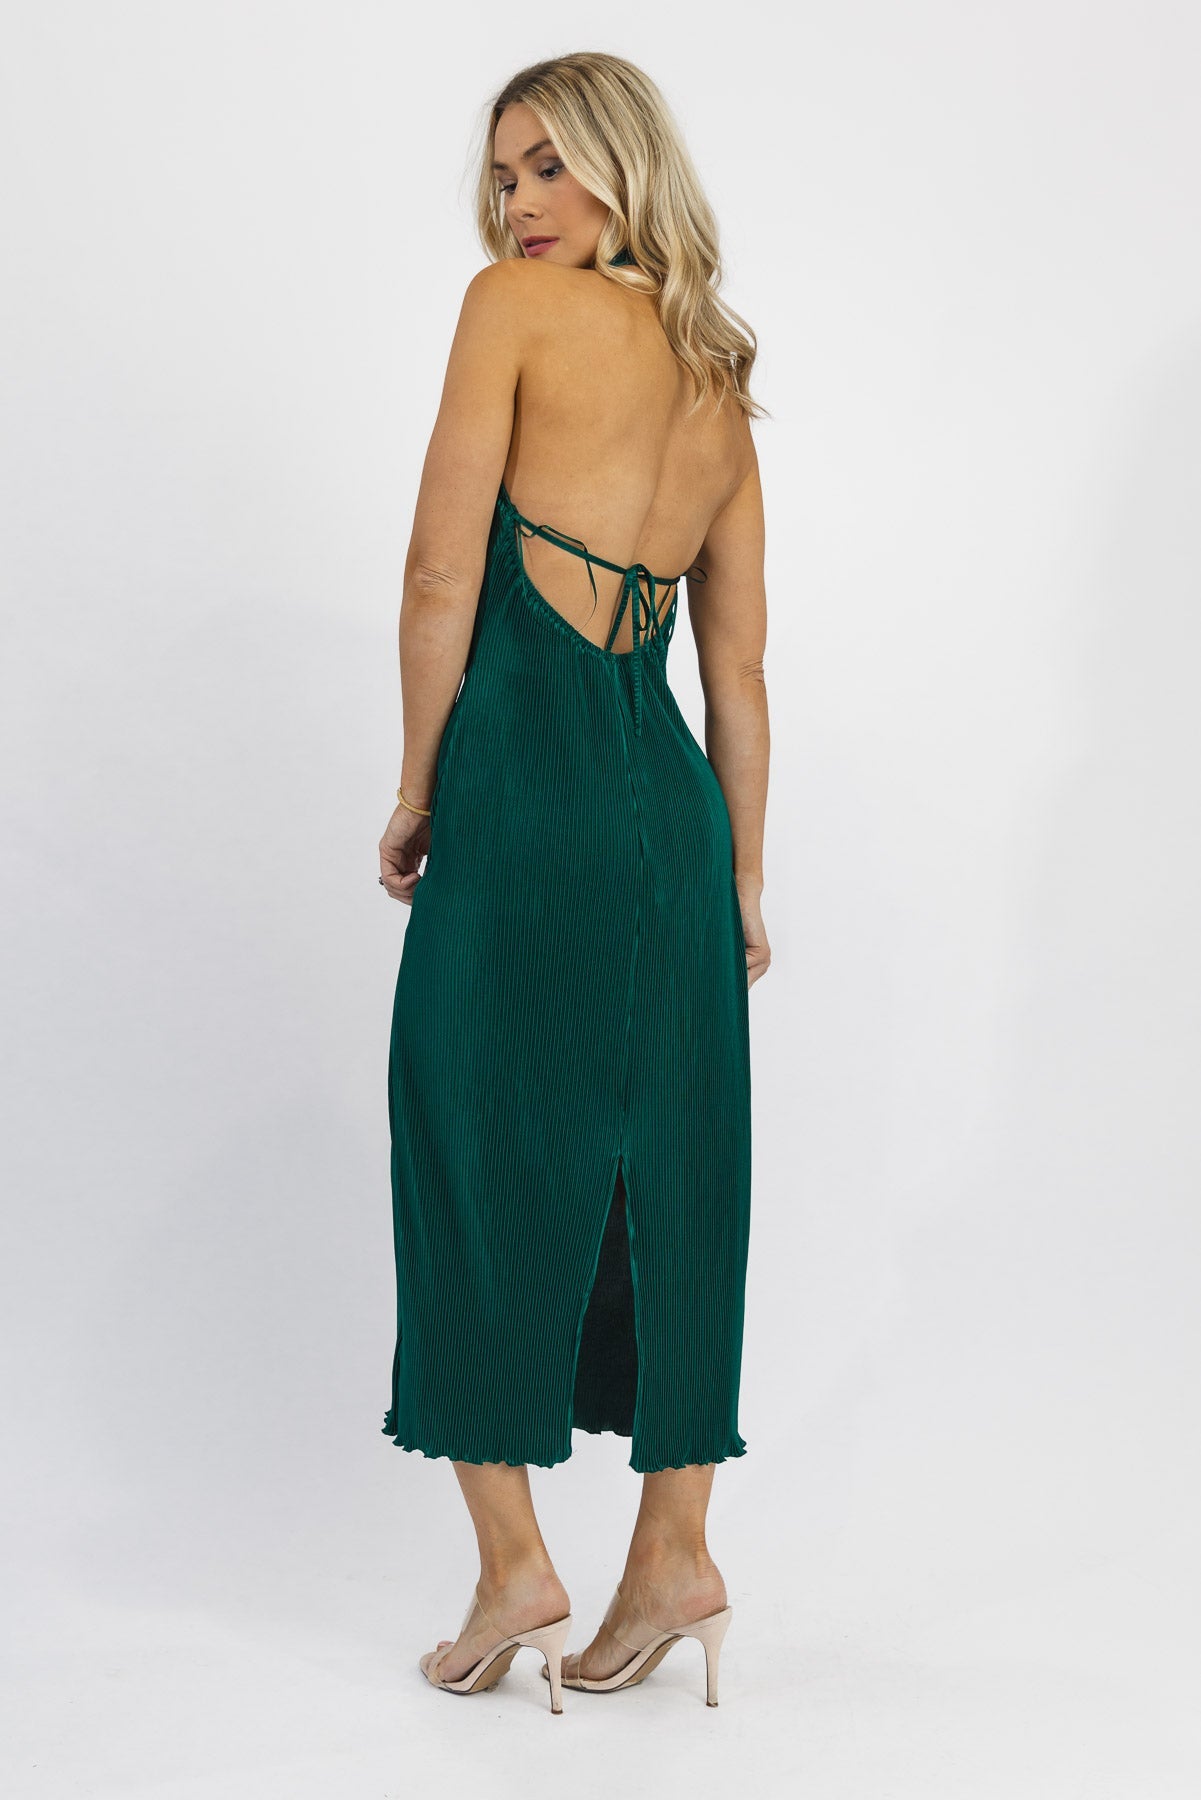 Elegant Green Halter Midi Dress | Holiday Evening Wear | JO+CO